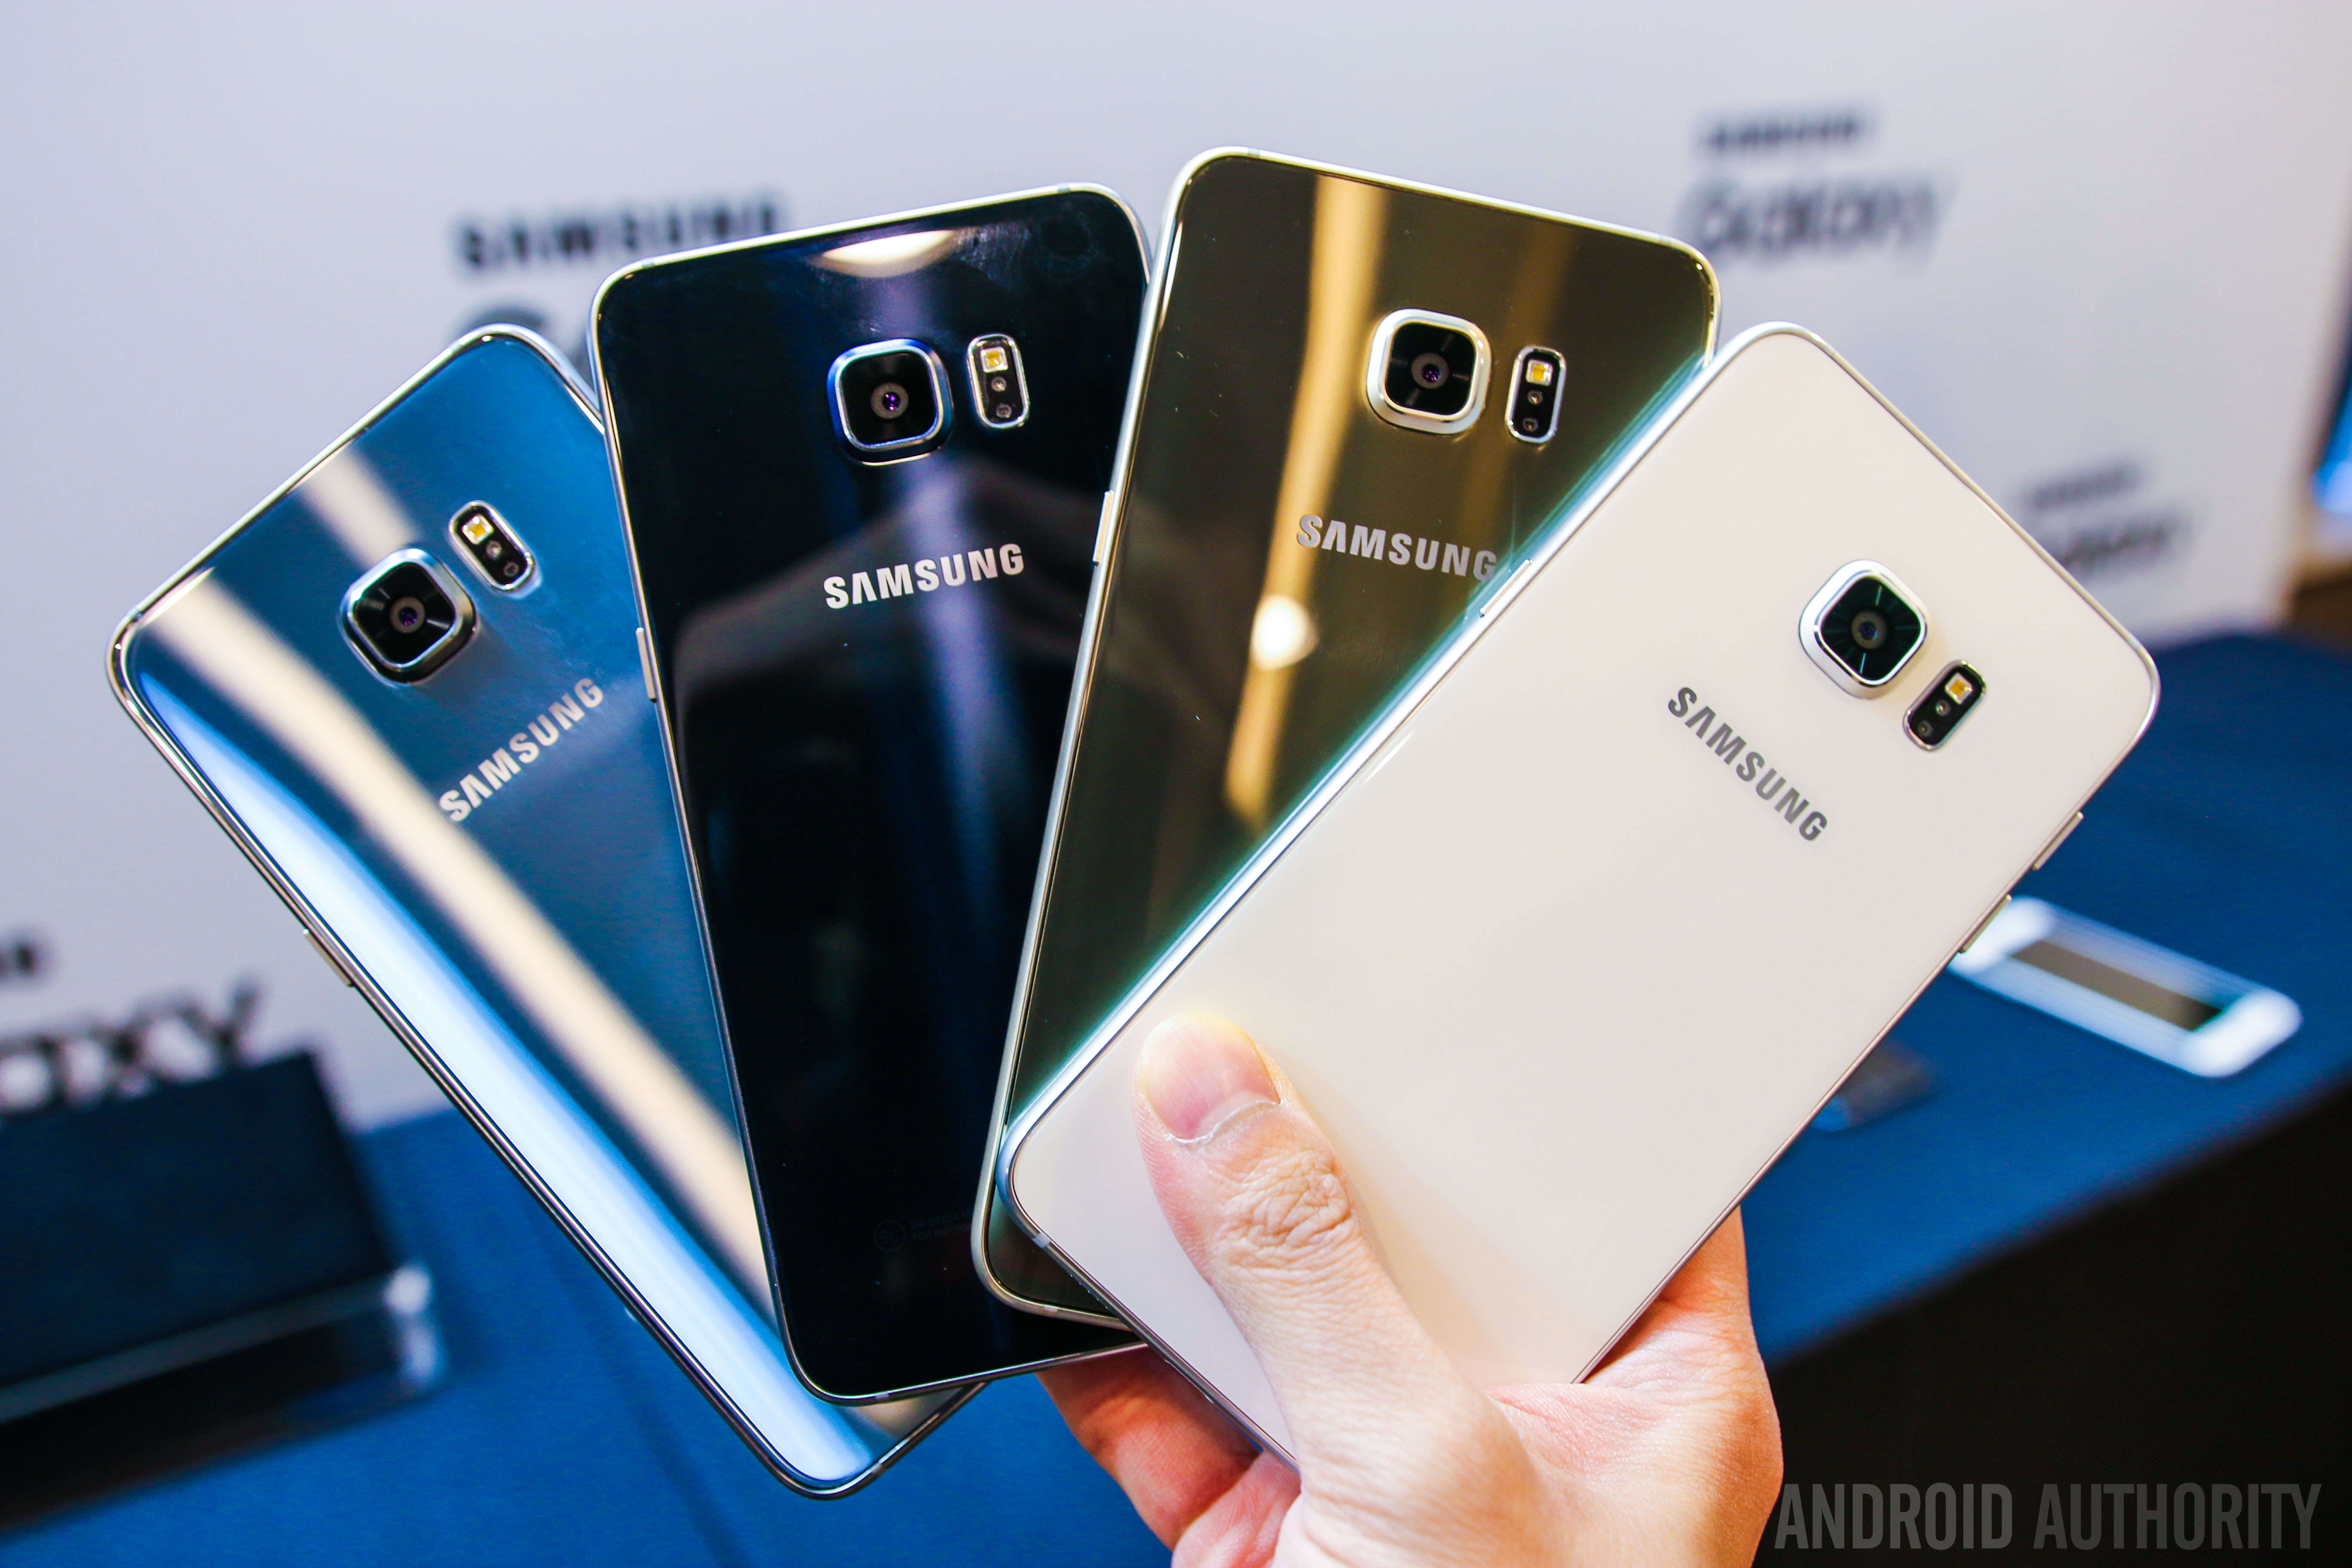 Samsung Galaxy A71 6 128gb Silver